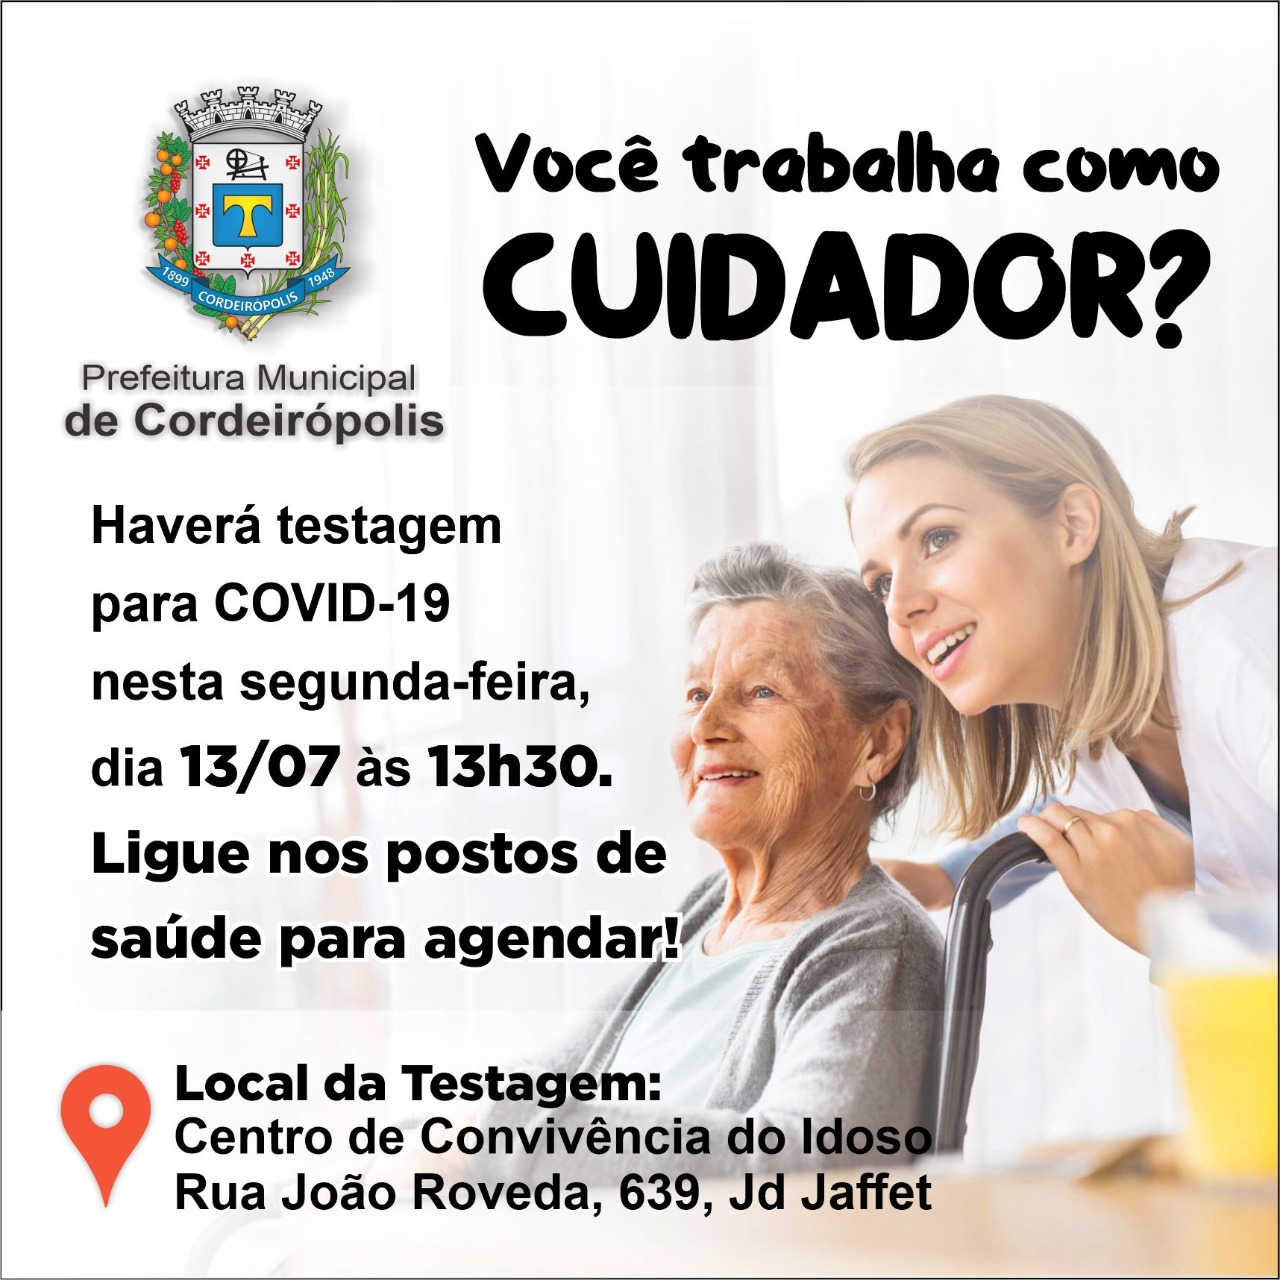 Hoje inicia a testagem de Covid-19 com cuidadores de idosos em Cordeirópolis